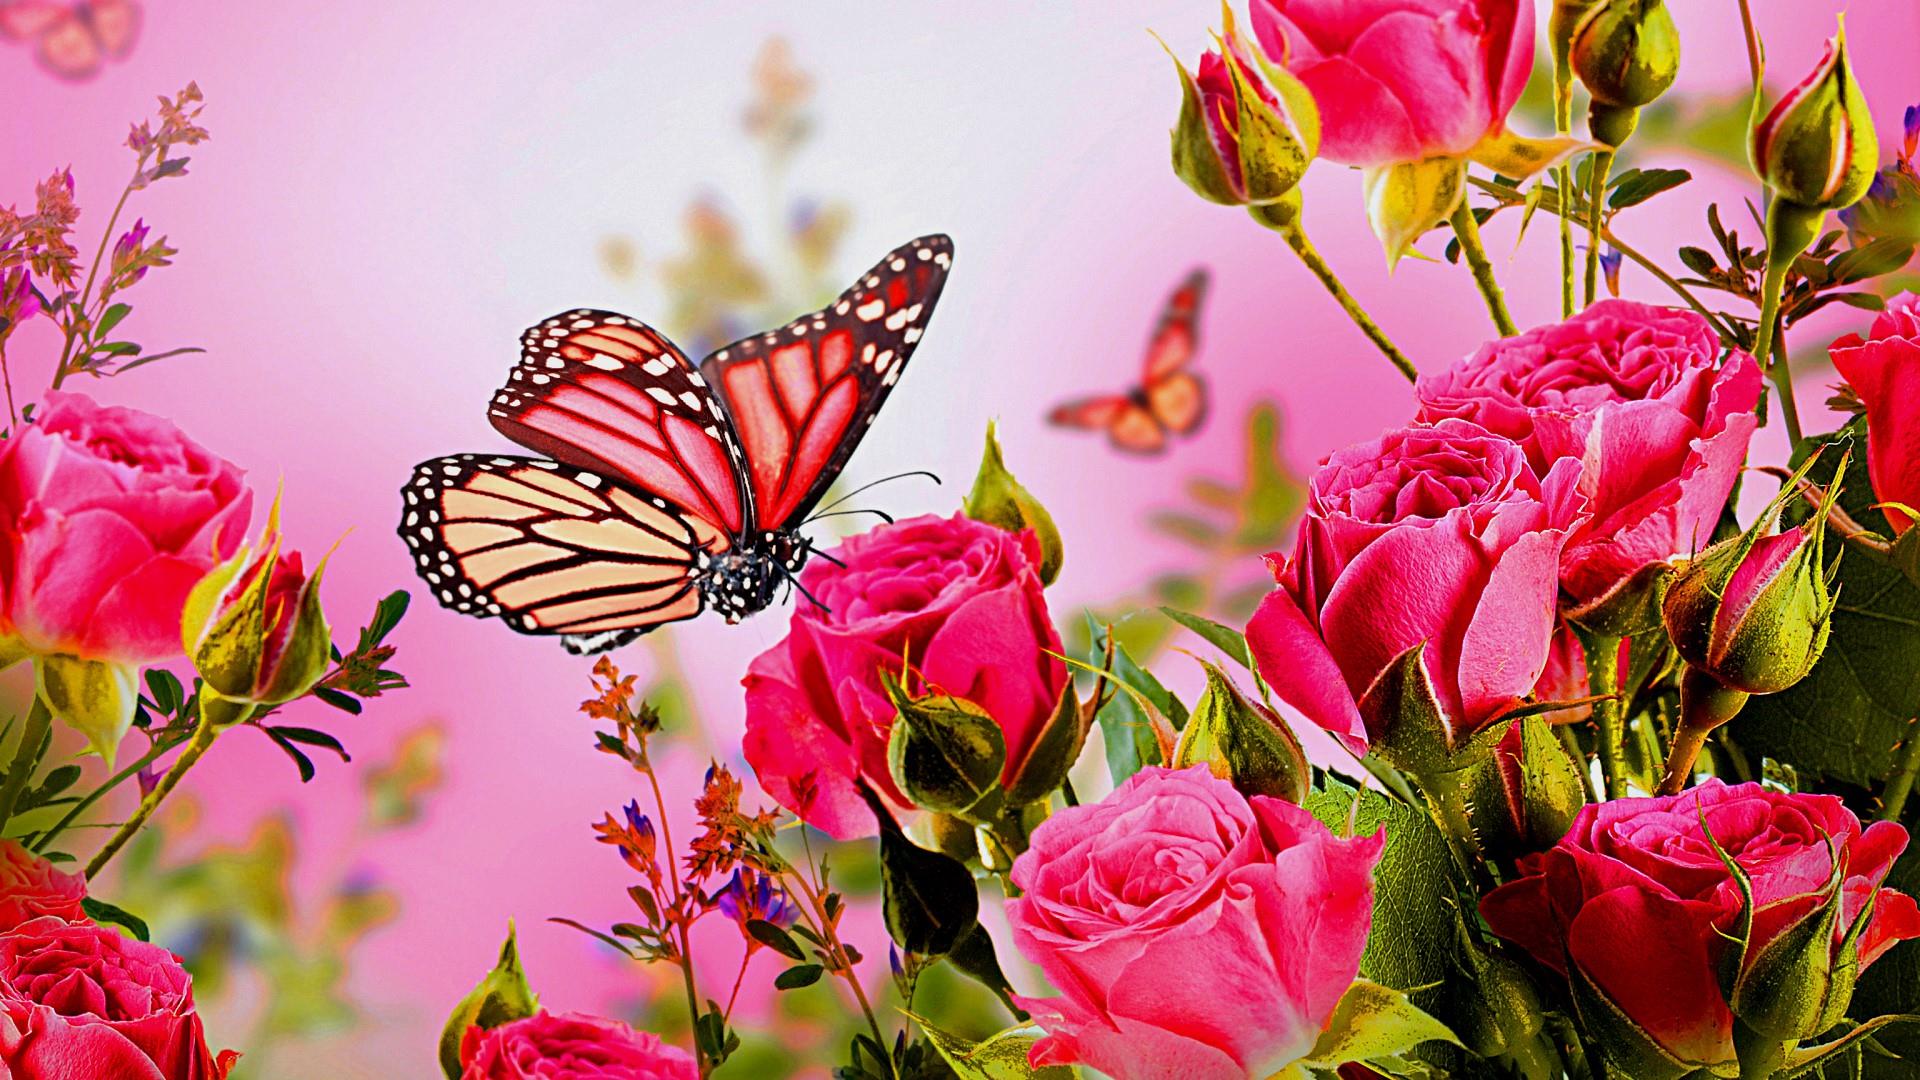 Скачать обои бесплатно Животные, Роза, Бабочка, Розовый Цветок, Розовая Роза картинка на рабочий стол ПК